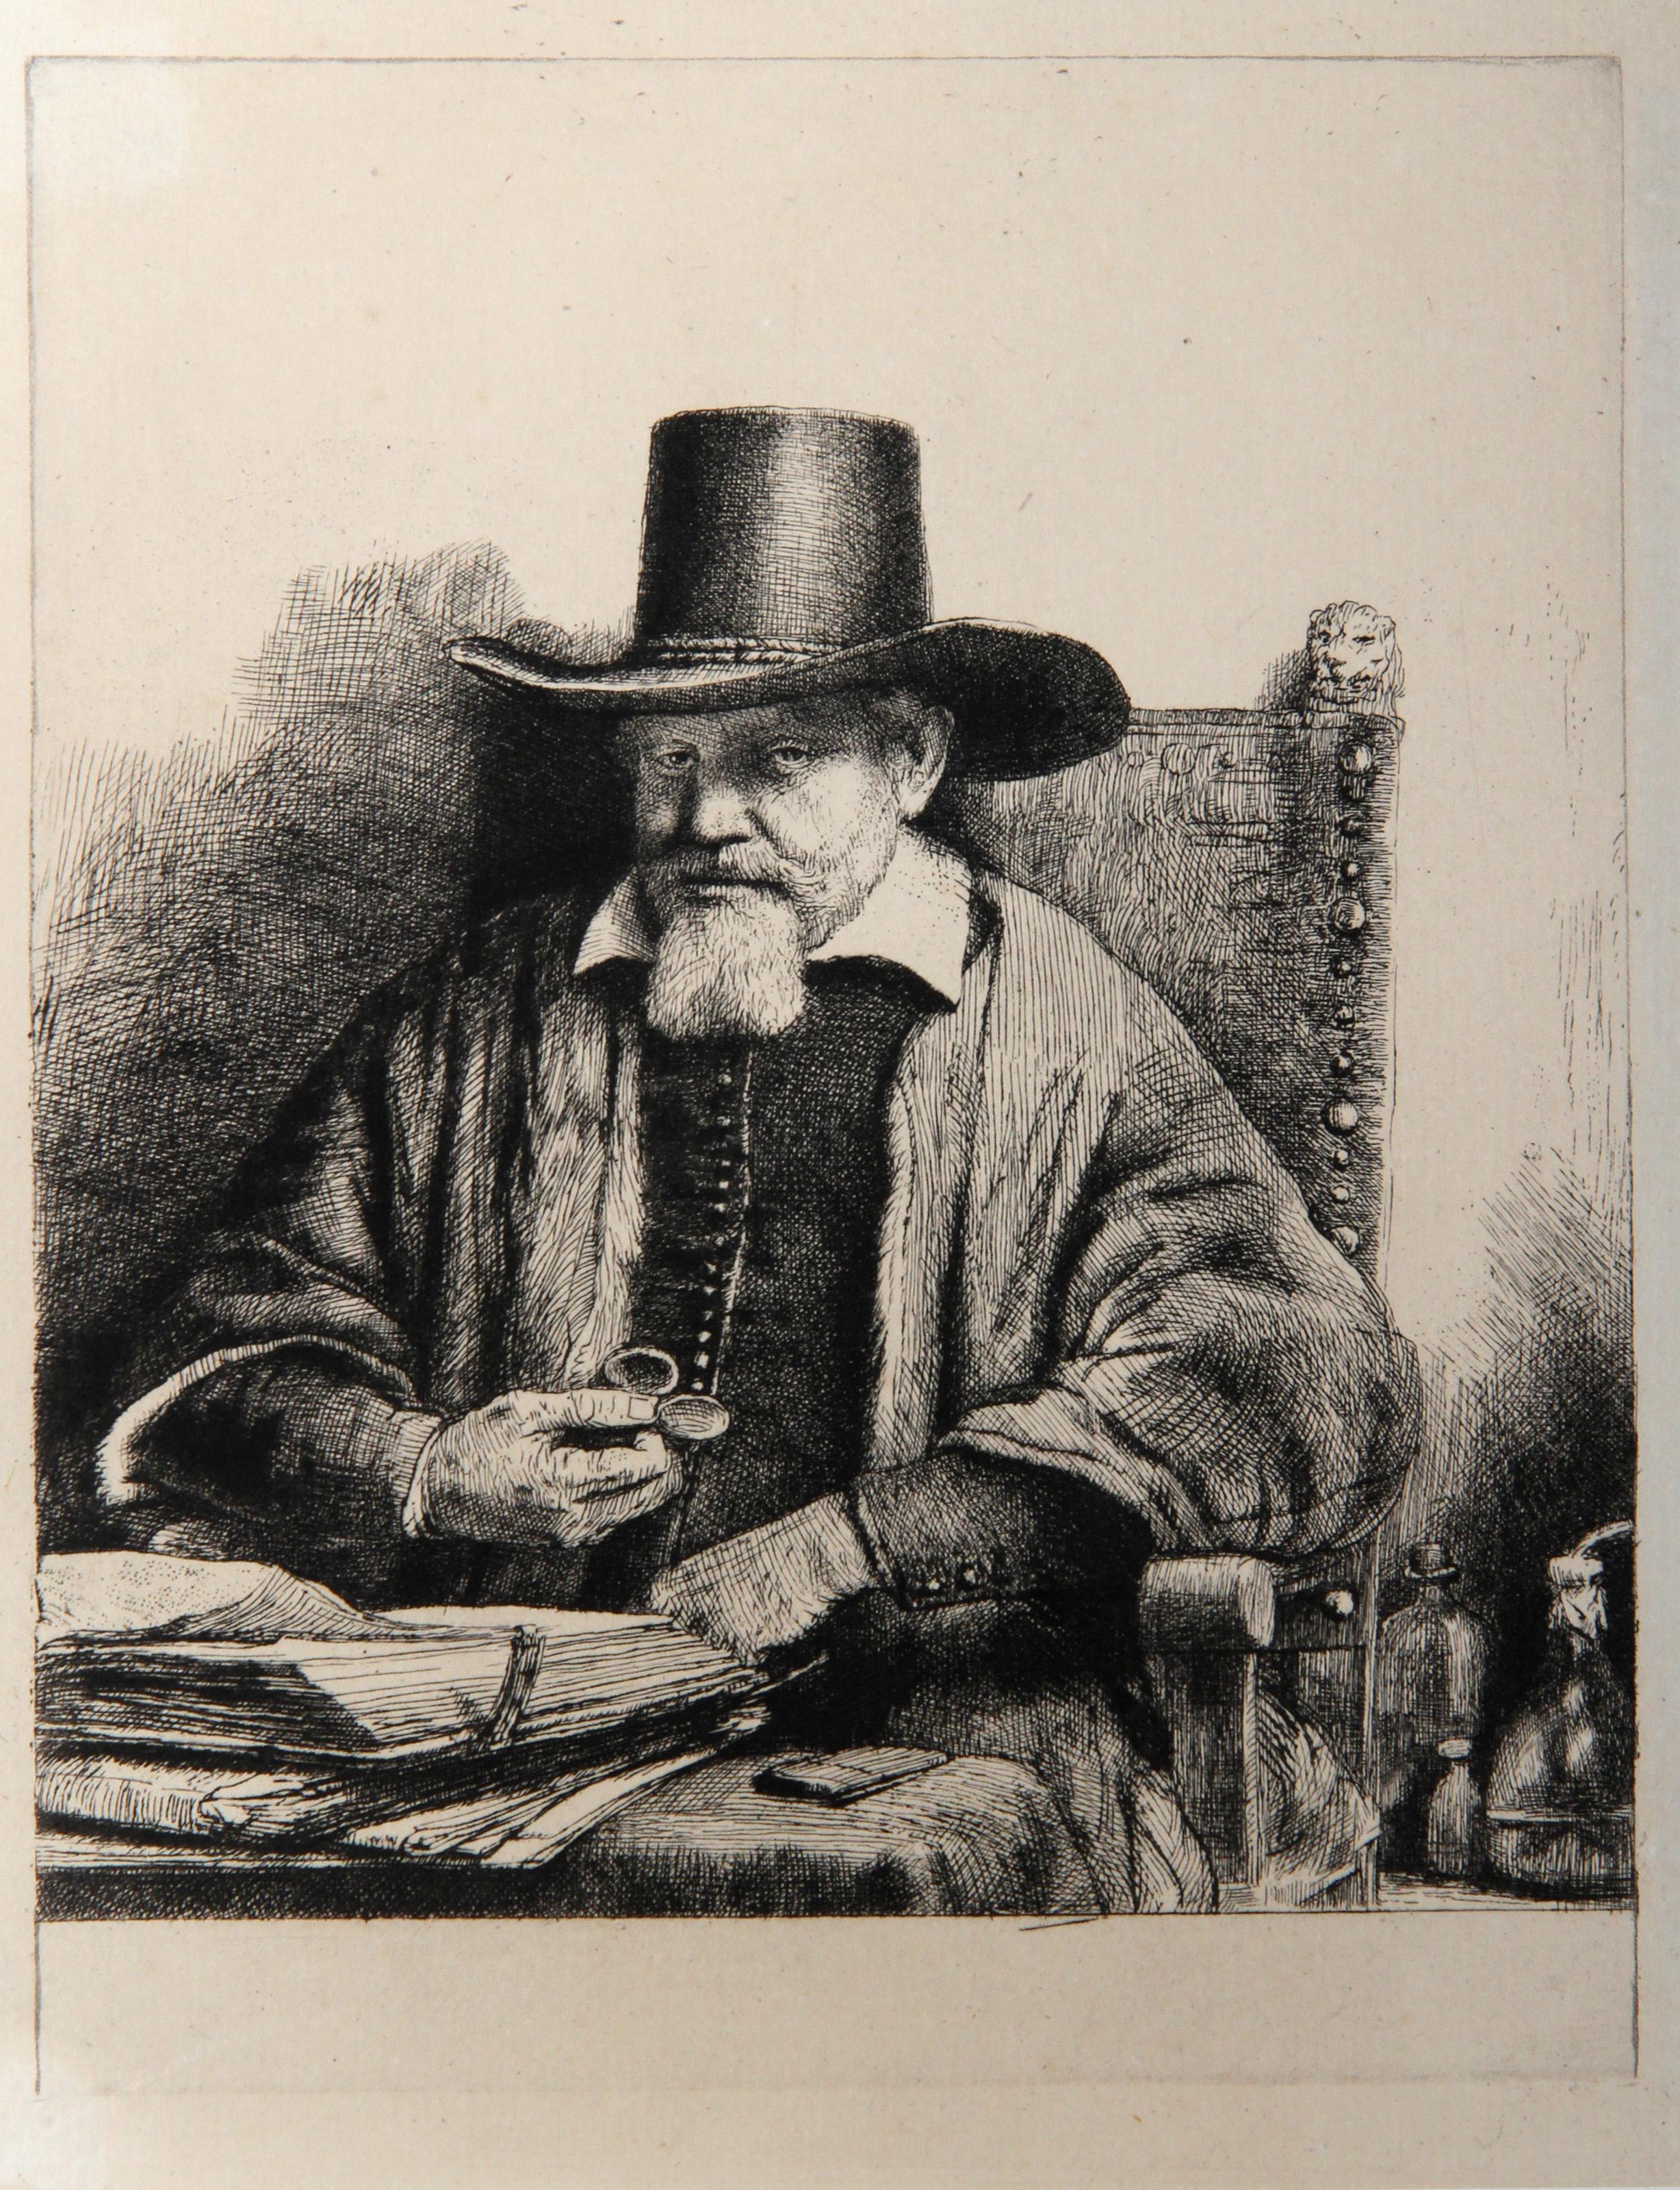 Rembrandt van Rijn, After by Amand Durand, Dutch (1606 - 1669) -  Portrait du Docteur Petrus Van Tol (B284). Year: 1878 (of original 1656), Medium: Heliogravure, Size: 11  x 7.75 in. (27.94  x 19.69 cm), Printer: Amand Durand, Description: French